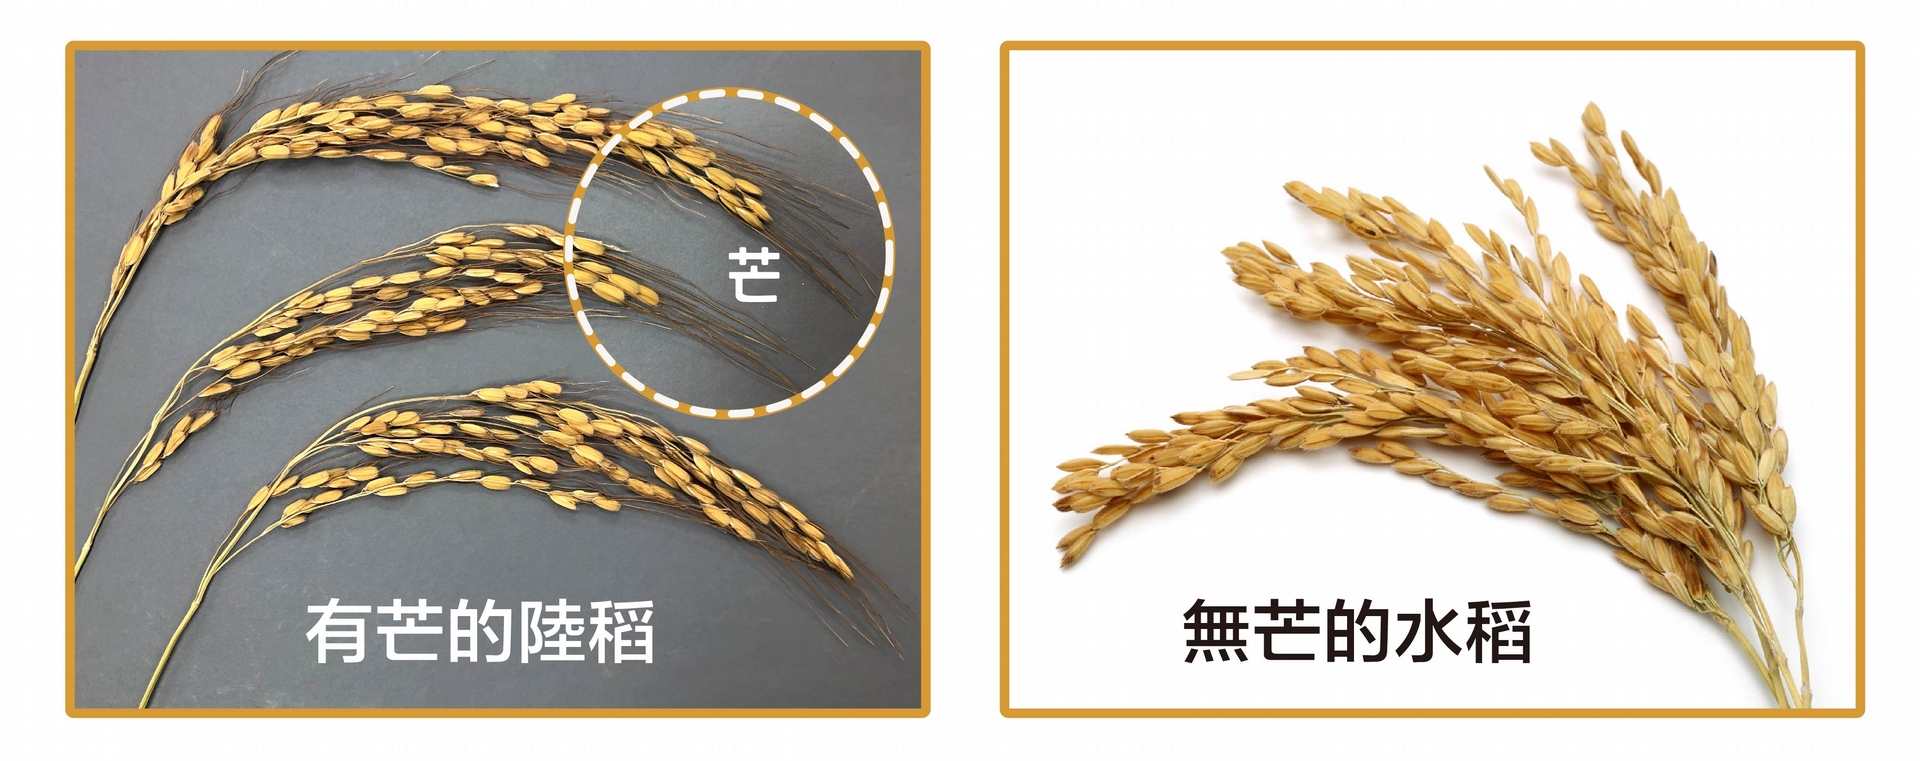 有芒的陸稻 (左圖) 與無芒的水稻 (右圖)。什麼是馴化？人類以稻米為糧食，會選擇顆粒大的、產量多的、方便採收的稻子，久而久之，稻子的性狀就會被馴化–趨向於人類所喜好的特性，像是米粒變得大而飽滿、穀粒不具有芒、不容易落粒、植株直立而不倒伏等等。野生陸稻多有稻芒，主要的功用是防止鳥兒啄食稻穀，還可幫助穀粒落地或附著在動物身上，以便傳播。不過，有芒的稻子收割和儲藏就不方便了。我們現在栽種的水稻，經過長期的馴化，穀粒上都沒有「芒」了。 <br>攝影│林洵安 (左圖) <br>圖片來源│iStock (右圖) 